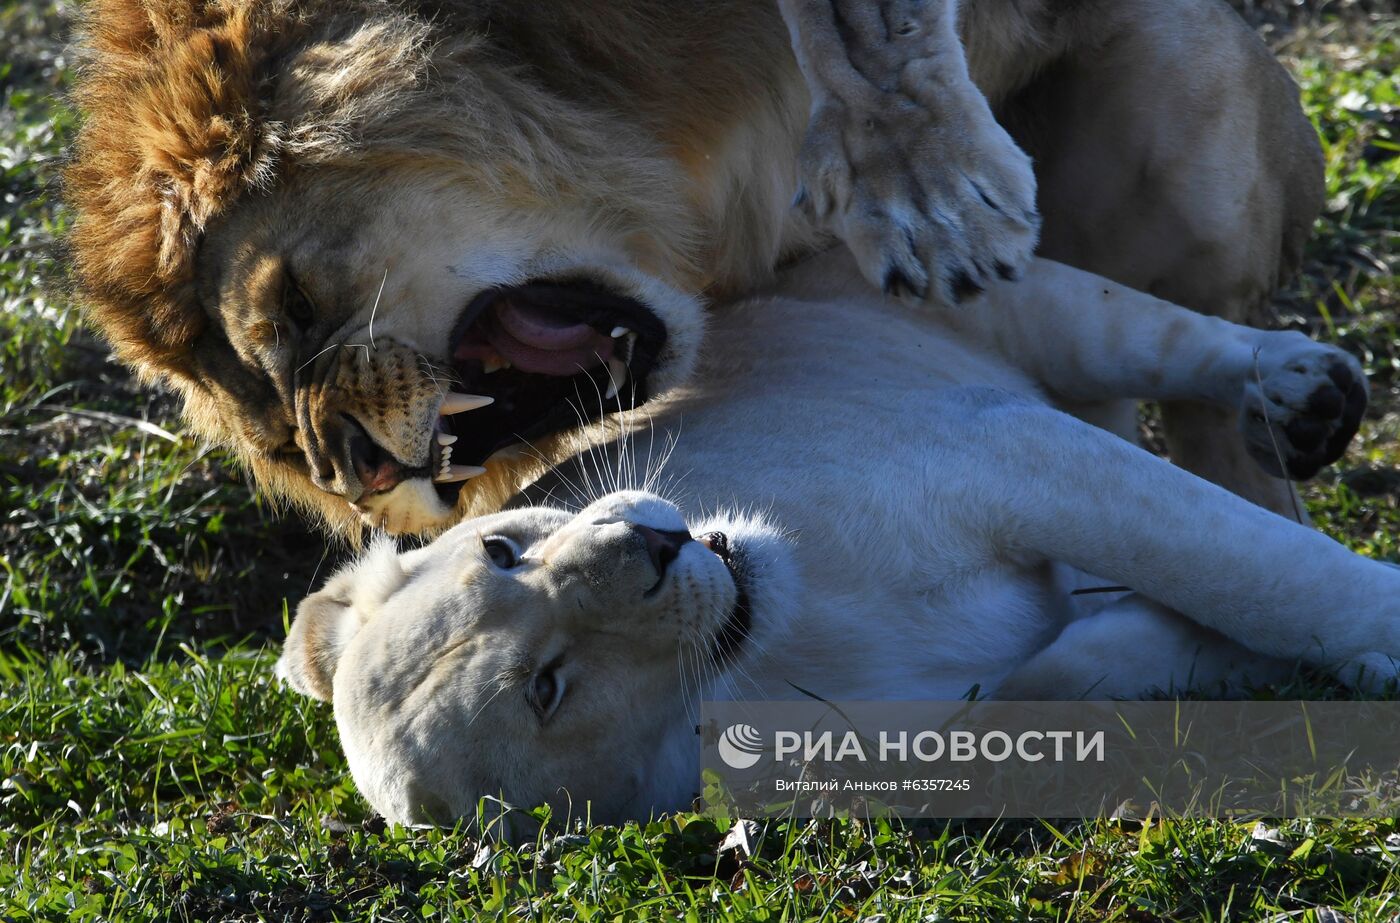 Парк "Белый лев" в Приморском крае